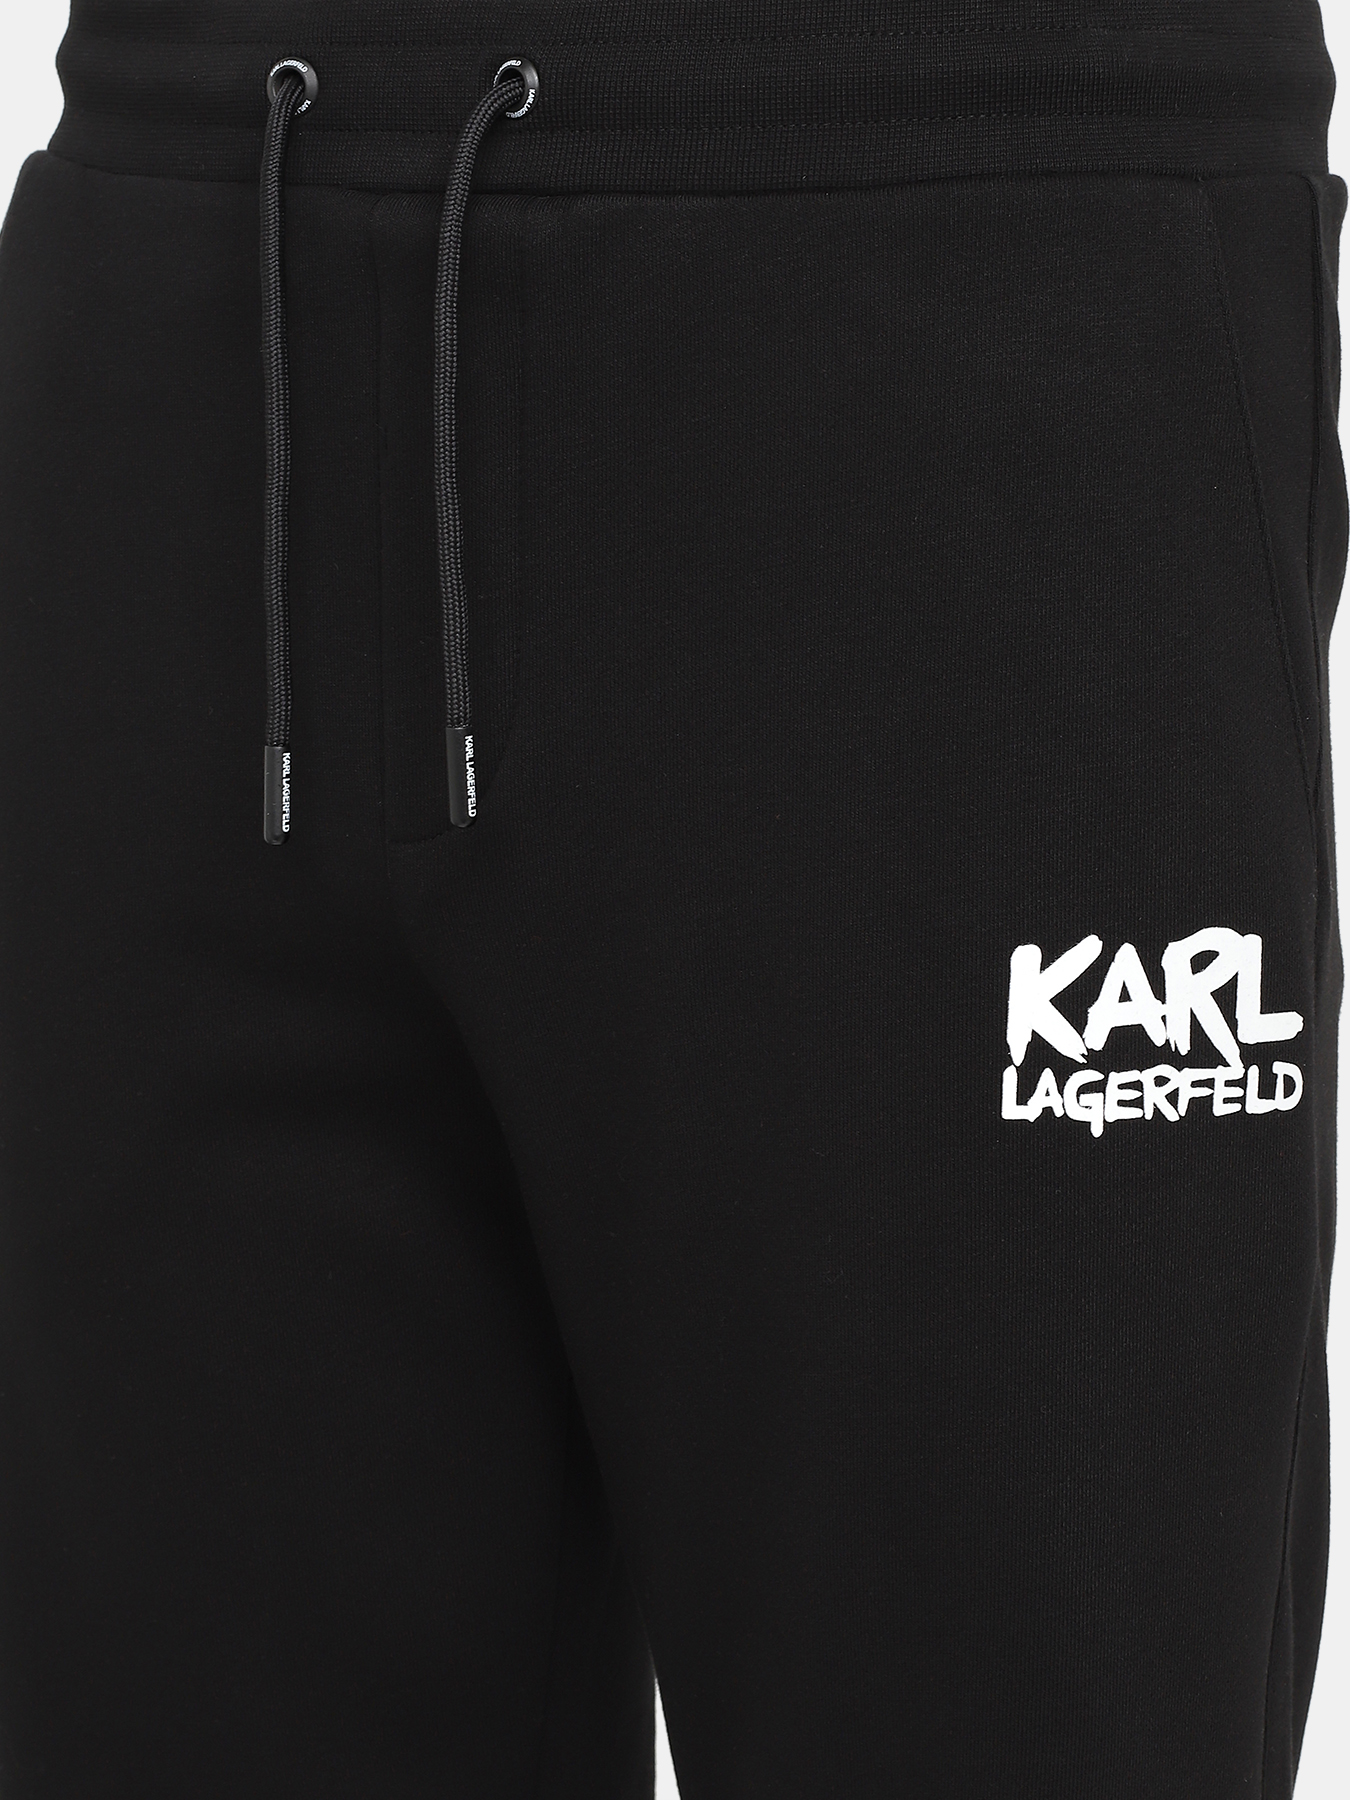 Шорты Karl Lagerfeld 430964-045 Фото 3